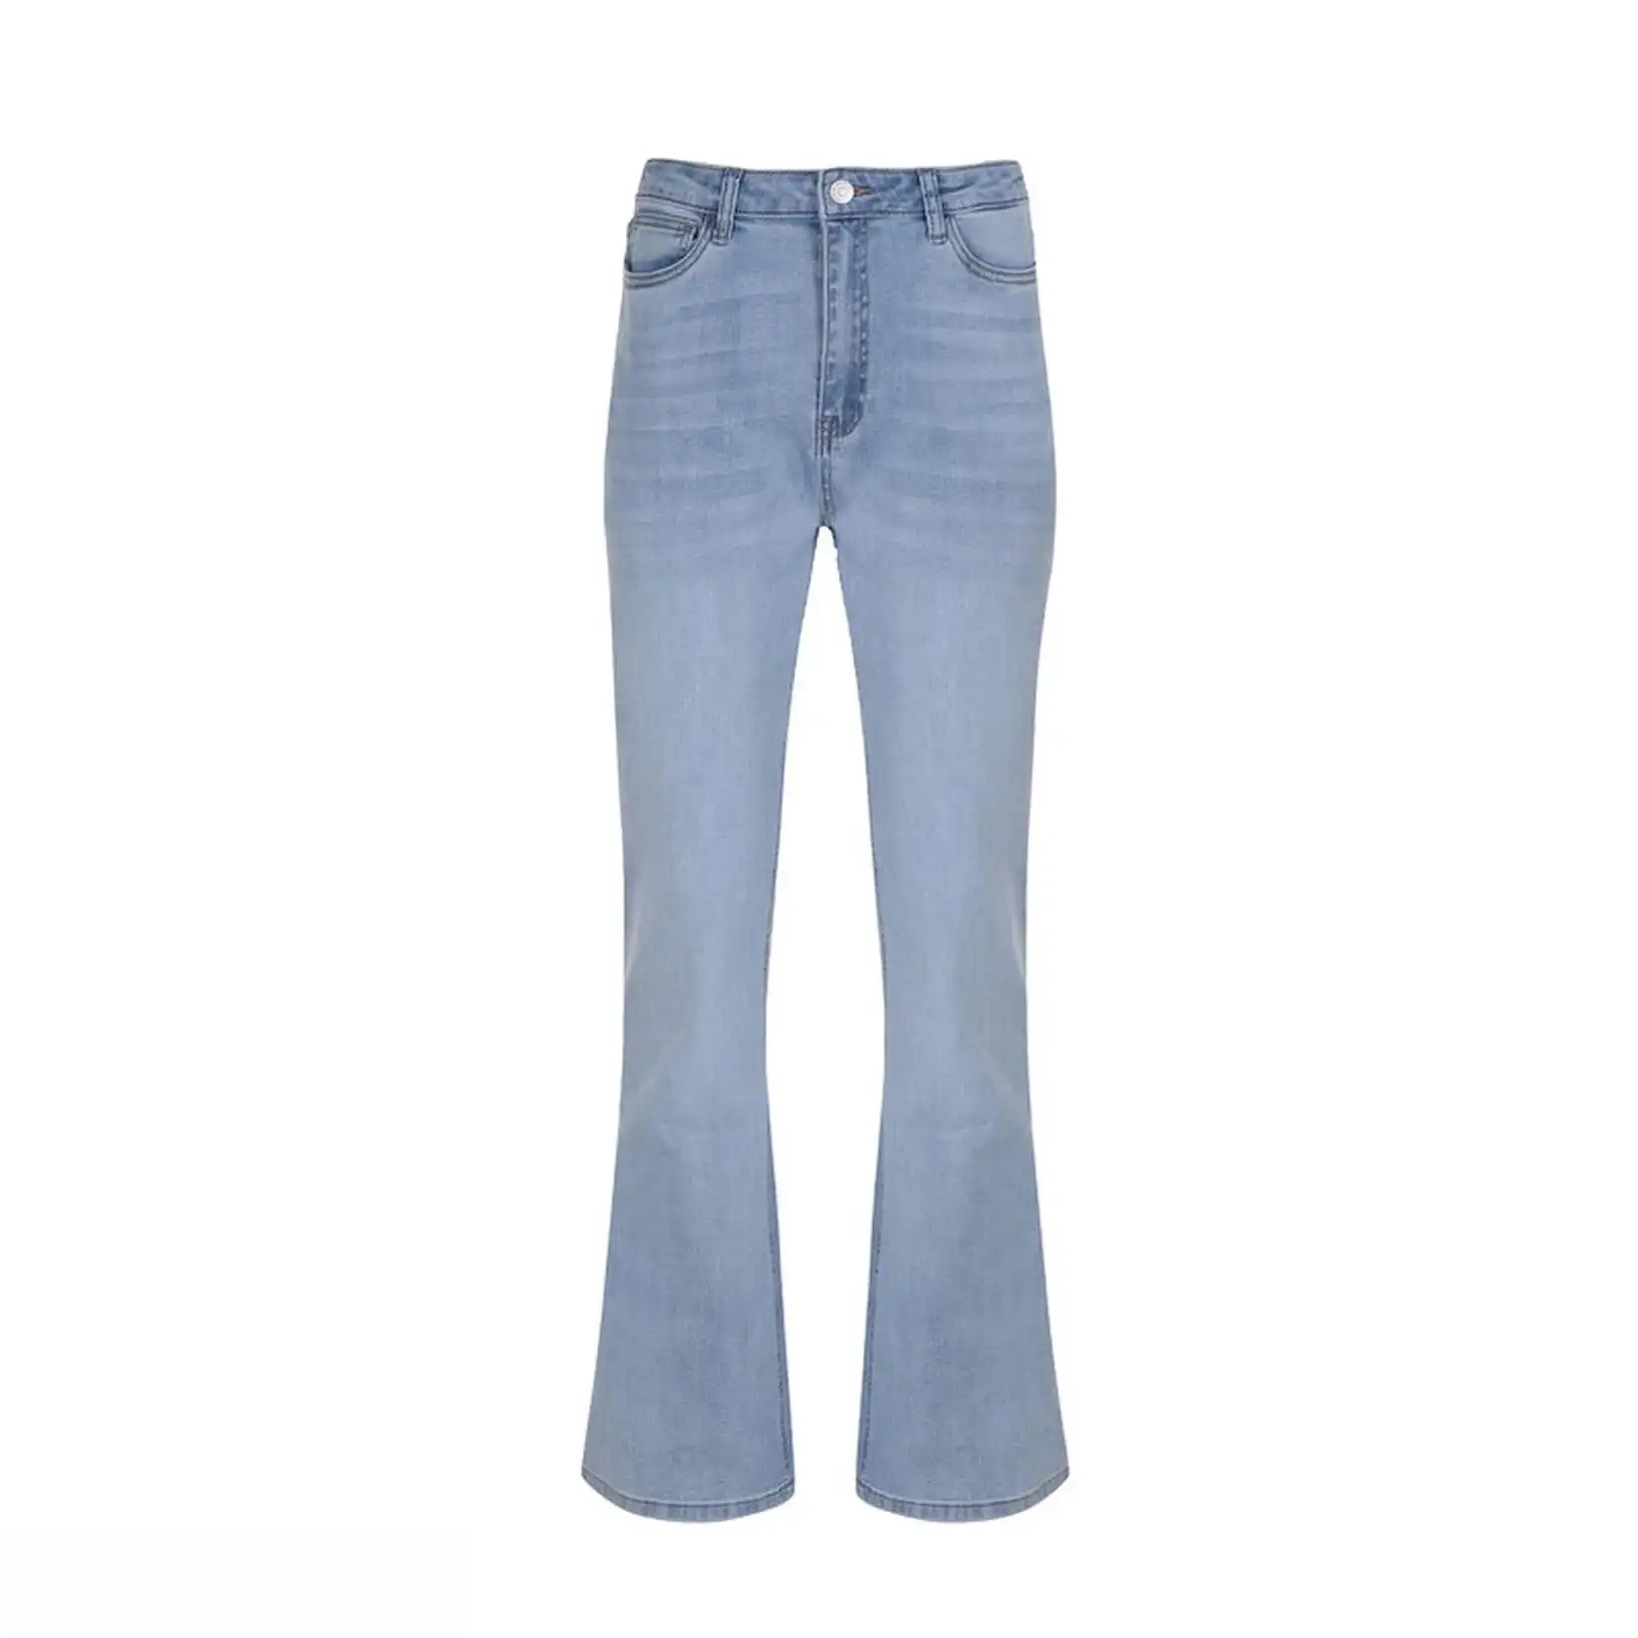 نکته خرید - قیمت روز شلوار جین زنانه مدل دمپا گشاد کد MDSS-CF7481 خرید